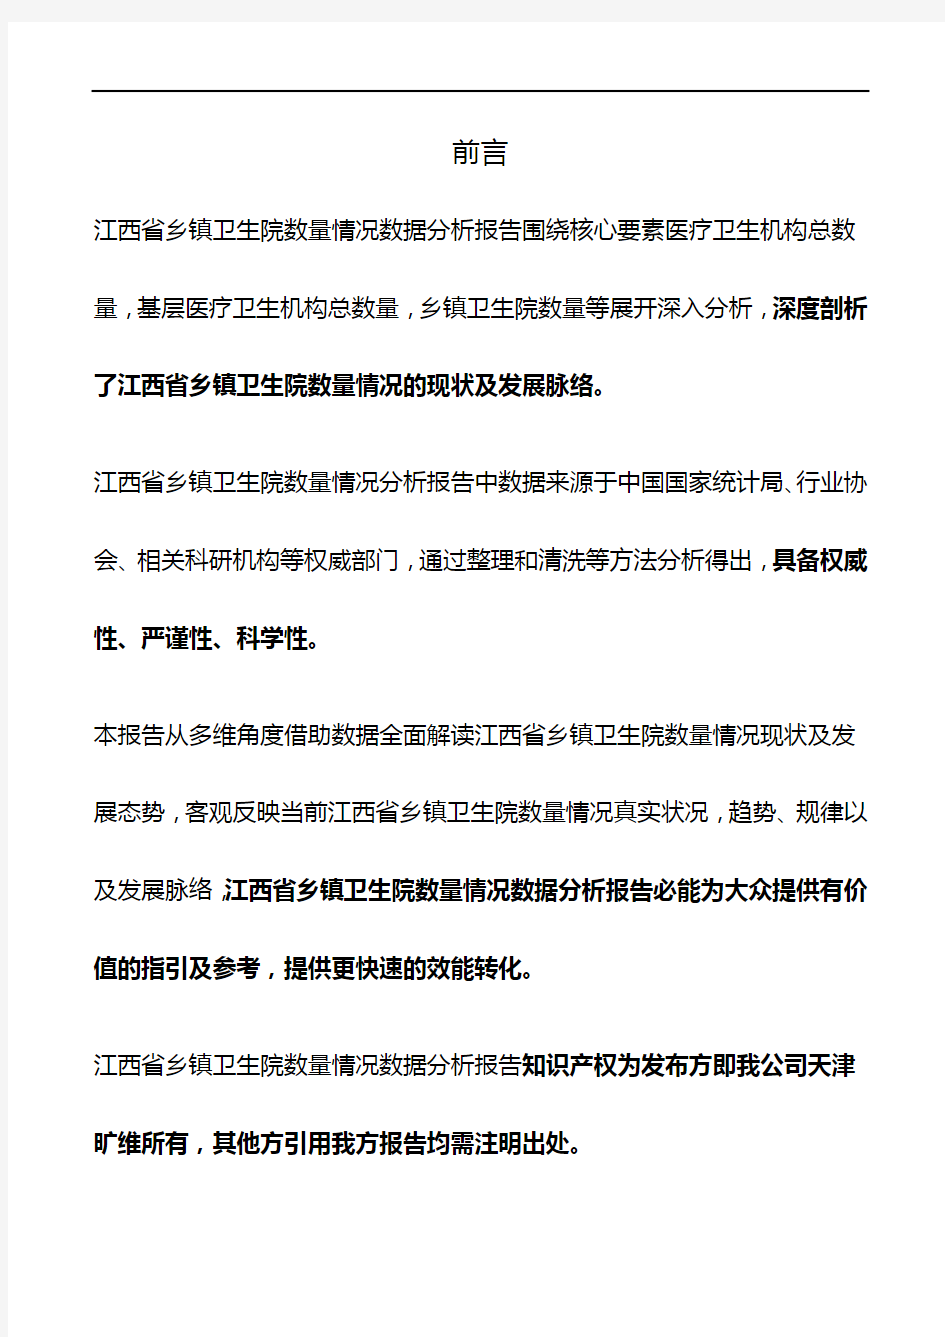 江西省乡镇卫生院数量情况3年数据分析报告2019版